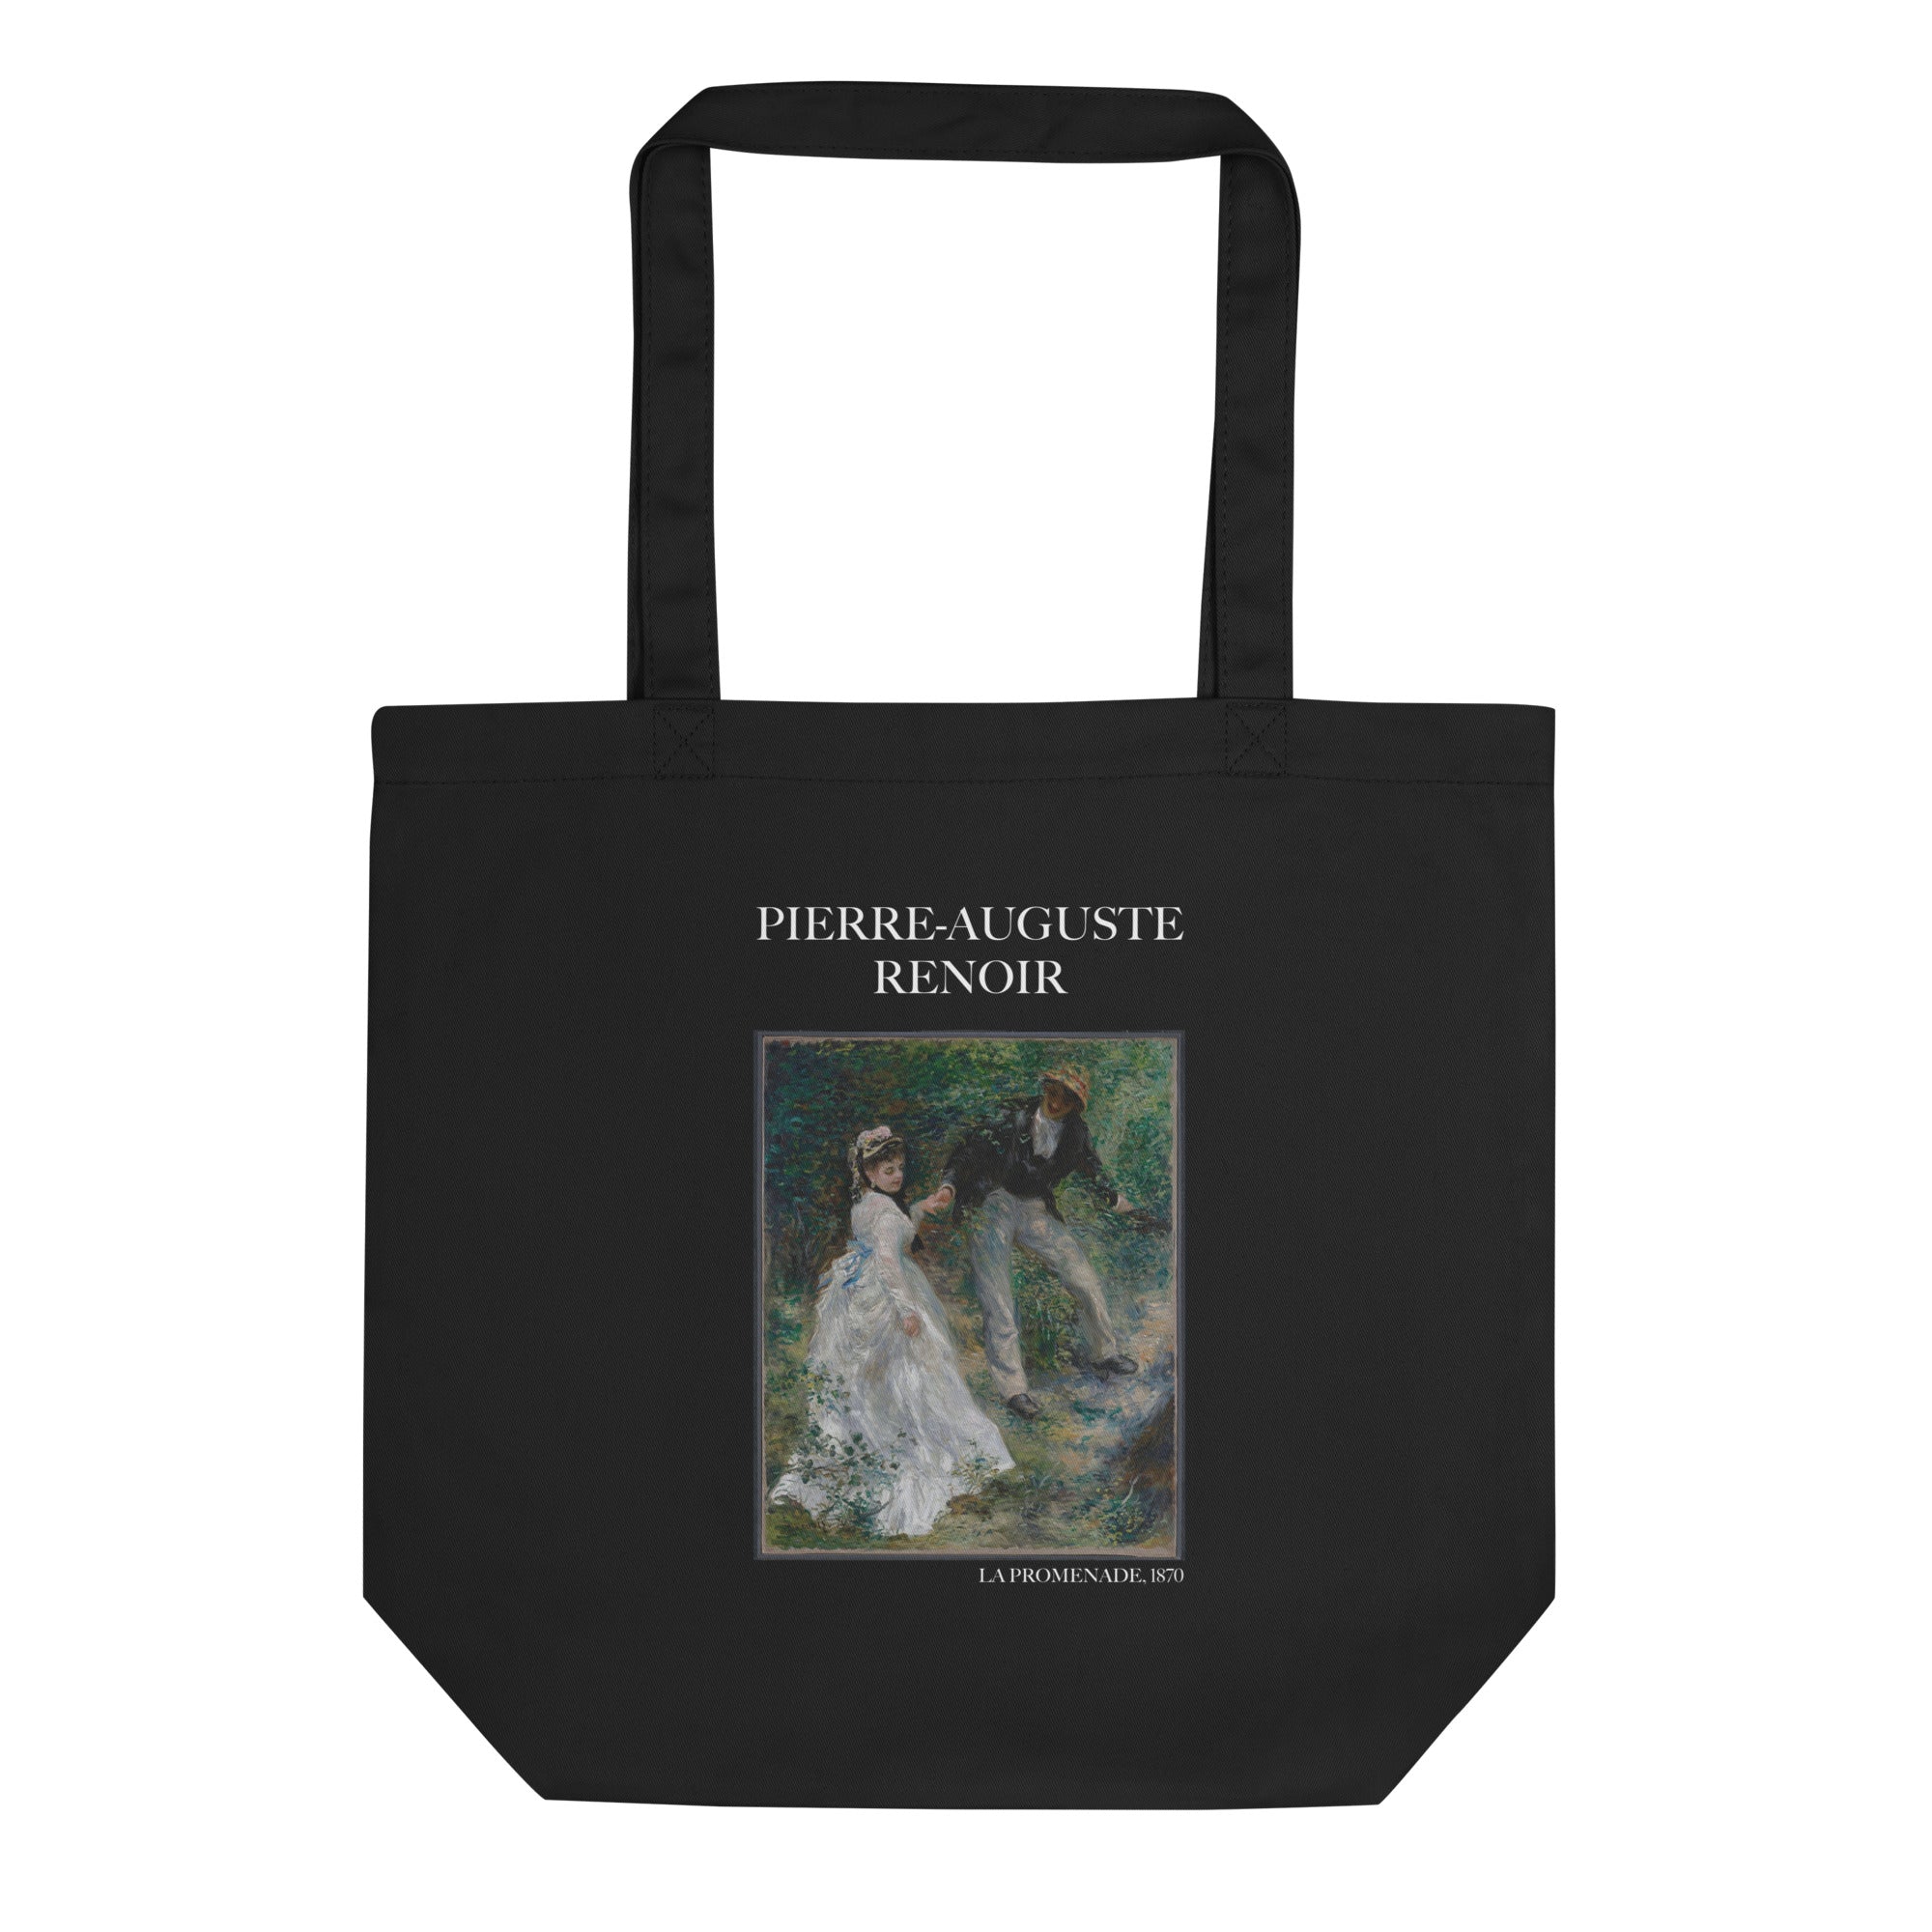 Pierre-Auguste Renoir 'La Promenade' berühmtes Gemälde Einkaufstasche | Umweltfreundliche Kunst Einkaufstasche